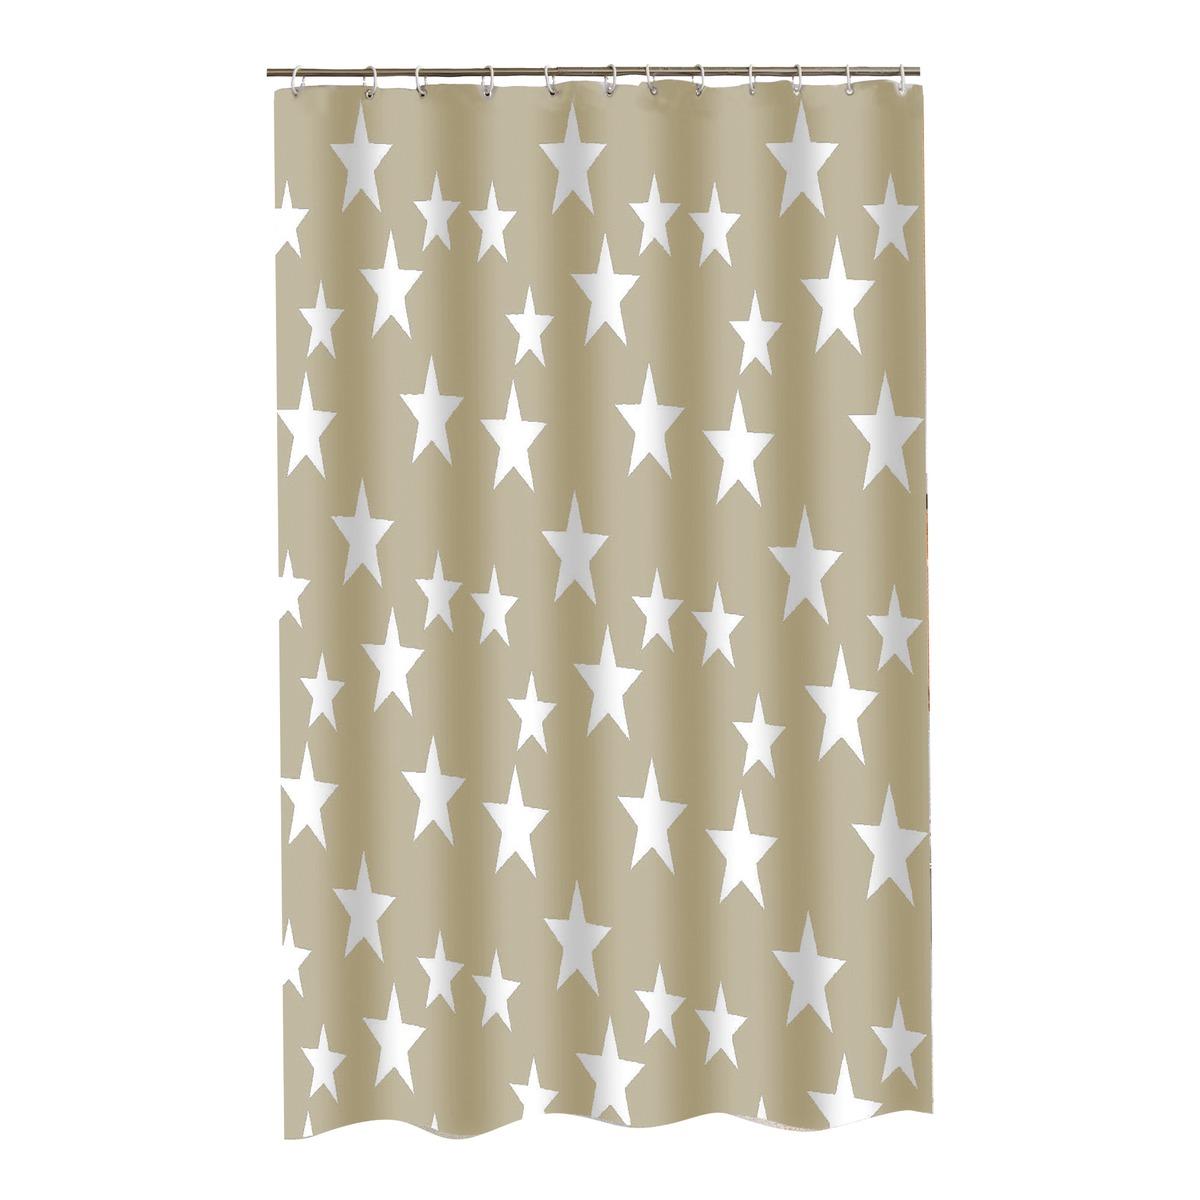 Rideau de douche motif étoile - 180 x 200 cm - Beige